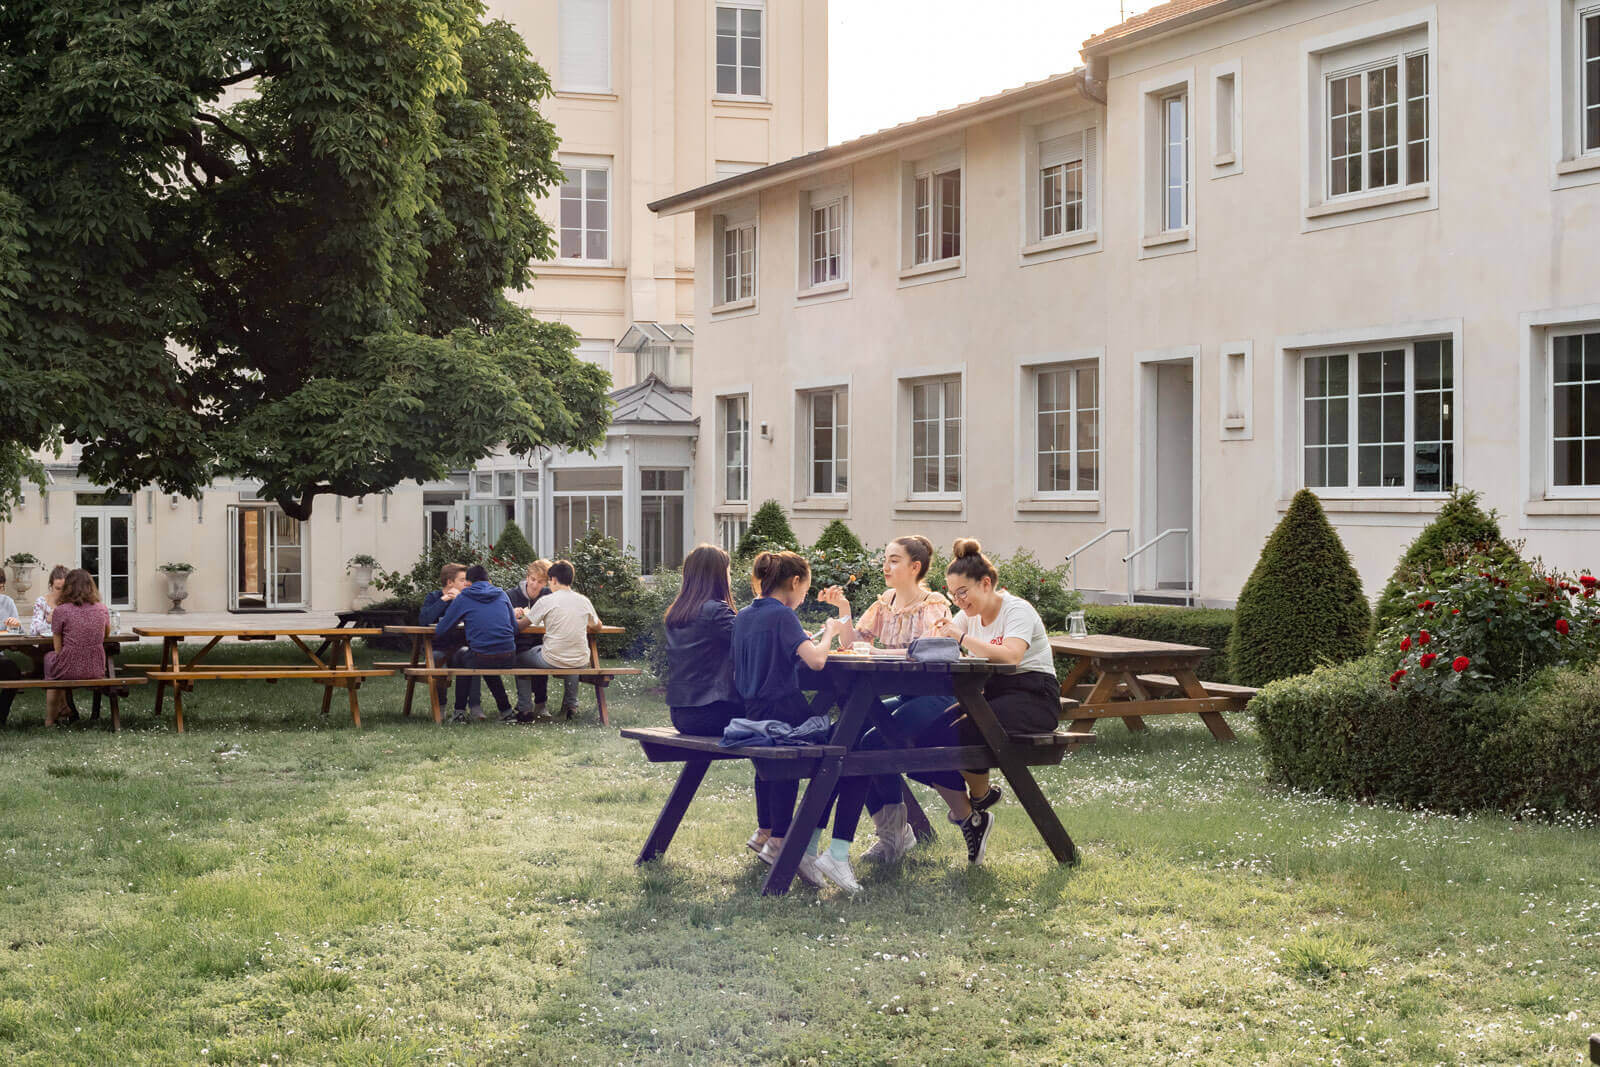 Etudiants en train de manger à l'extérieur, dans le jardin verdoyant du Foyer étudiant Les Enfants des Arts, près de Paris